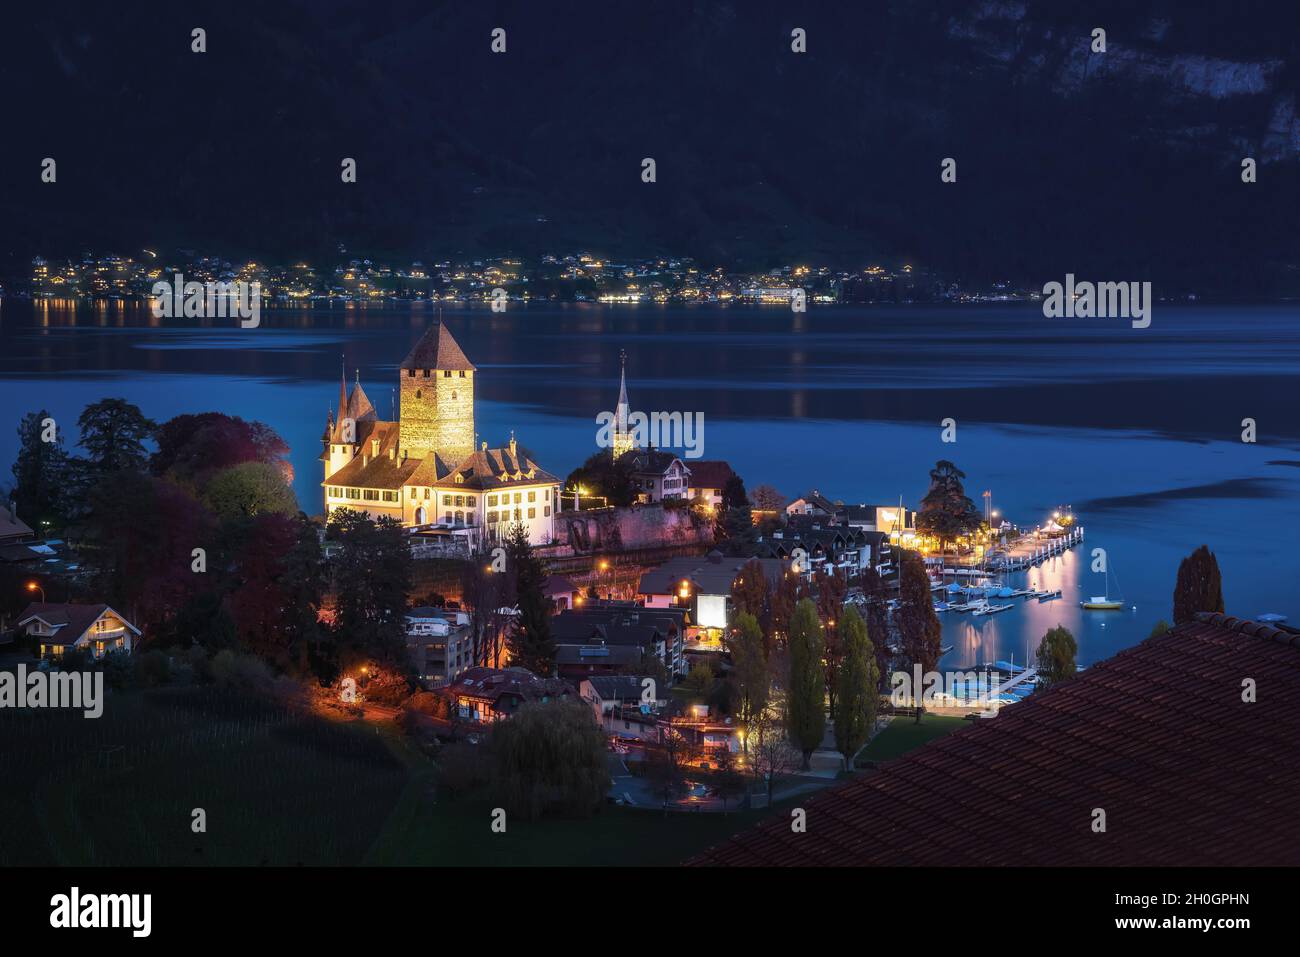 Luftaufnahme von Schloss Spiez und Schlosskirche am Thunersee bei Nacht - Spiez, Schweiz Stockfoto